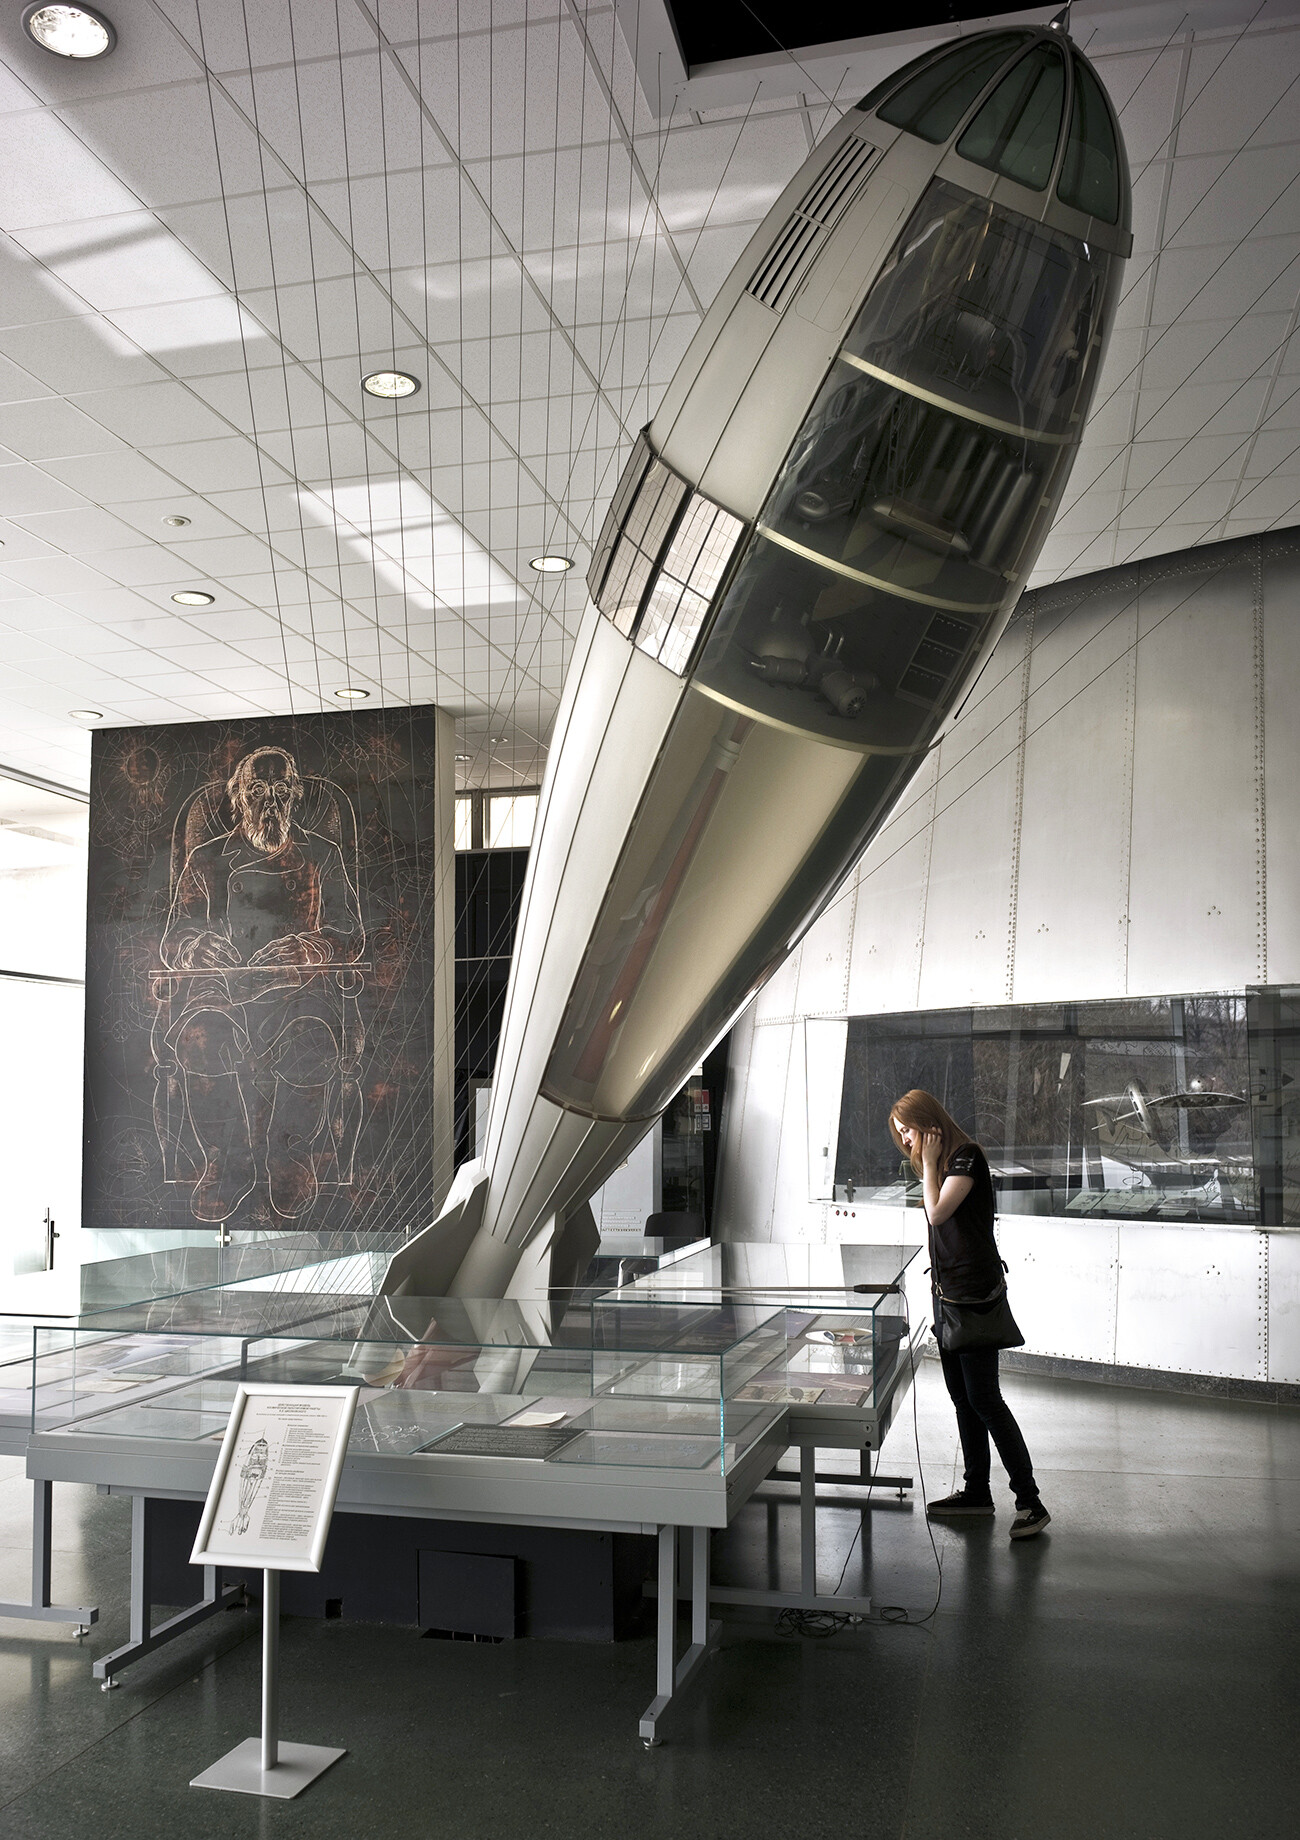 Действующая модель космической пилотируемой ракеты К. Циолковского в государственном музее истории космонавтики имени К. Э. Циолковского в Калуге